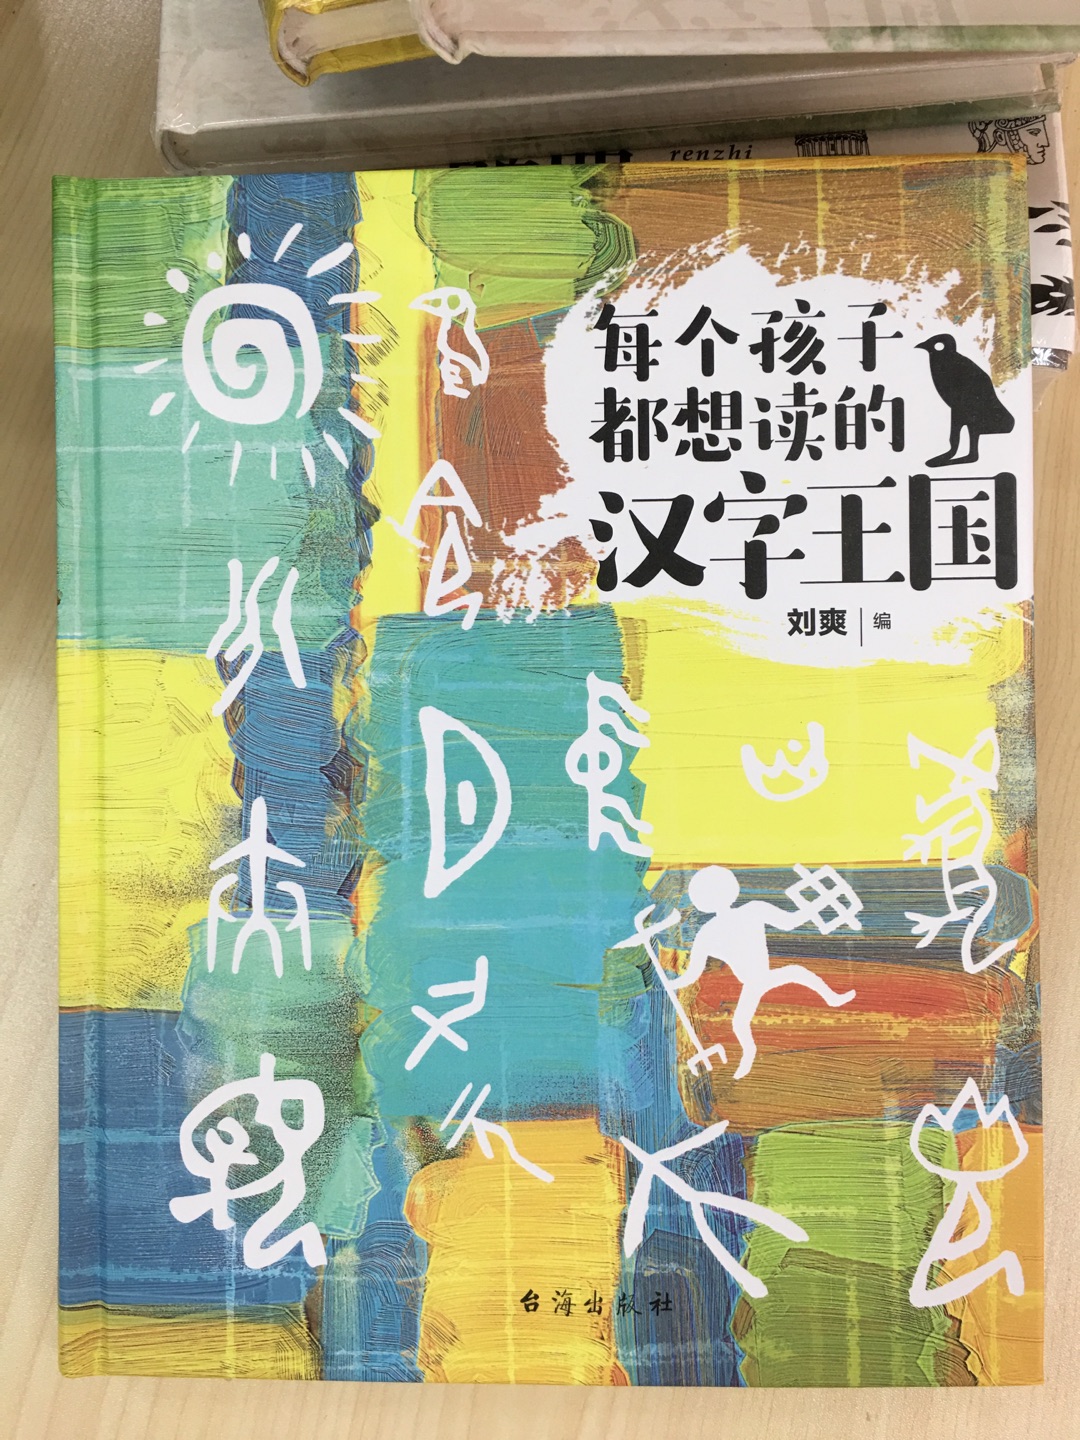 读了这本书后，孩子知道了汉字是如何形成和演变的，不会让孩子觉得学习汉字是一件枯燥乏味的事情了。吸取传统文化的营养，丰富专业的知识，去更加了解中国汉字文化的美，去感受中国汉字的精髓。主要选取一些与人的生活有关的字，按章讲述，如人与人类，水与山，家畜，车、路和船，农耕，酒和器皿，麻与丝、竹与树、屋顶与房子，书籍与音乐等，同时分析和讲述中国人的生活方式和风俗习惯，加深读者对文字的理解。书中只讲述了200多个“基本汉字”，它们大多是中国人最早创造使用的汉字。可以说，这是一本孩子学习汉字的通俗易懂的入门书。